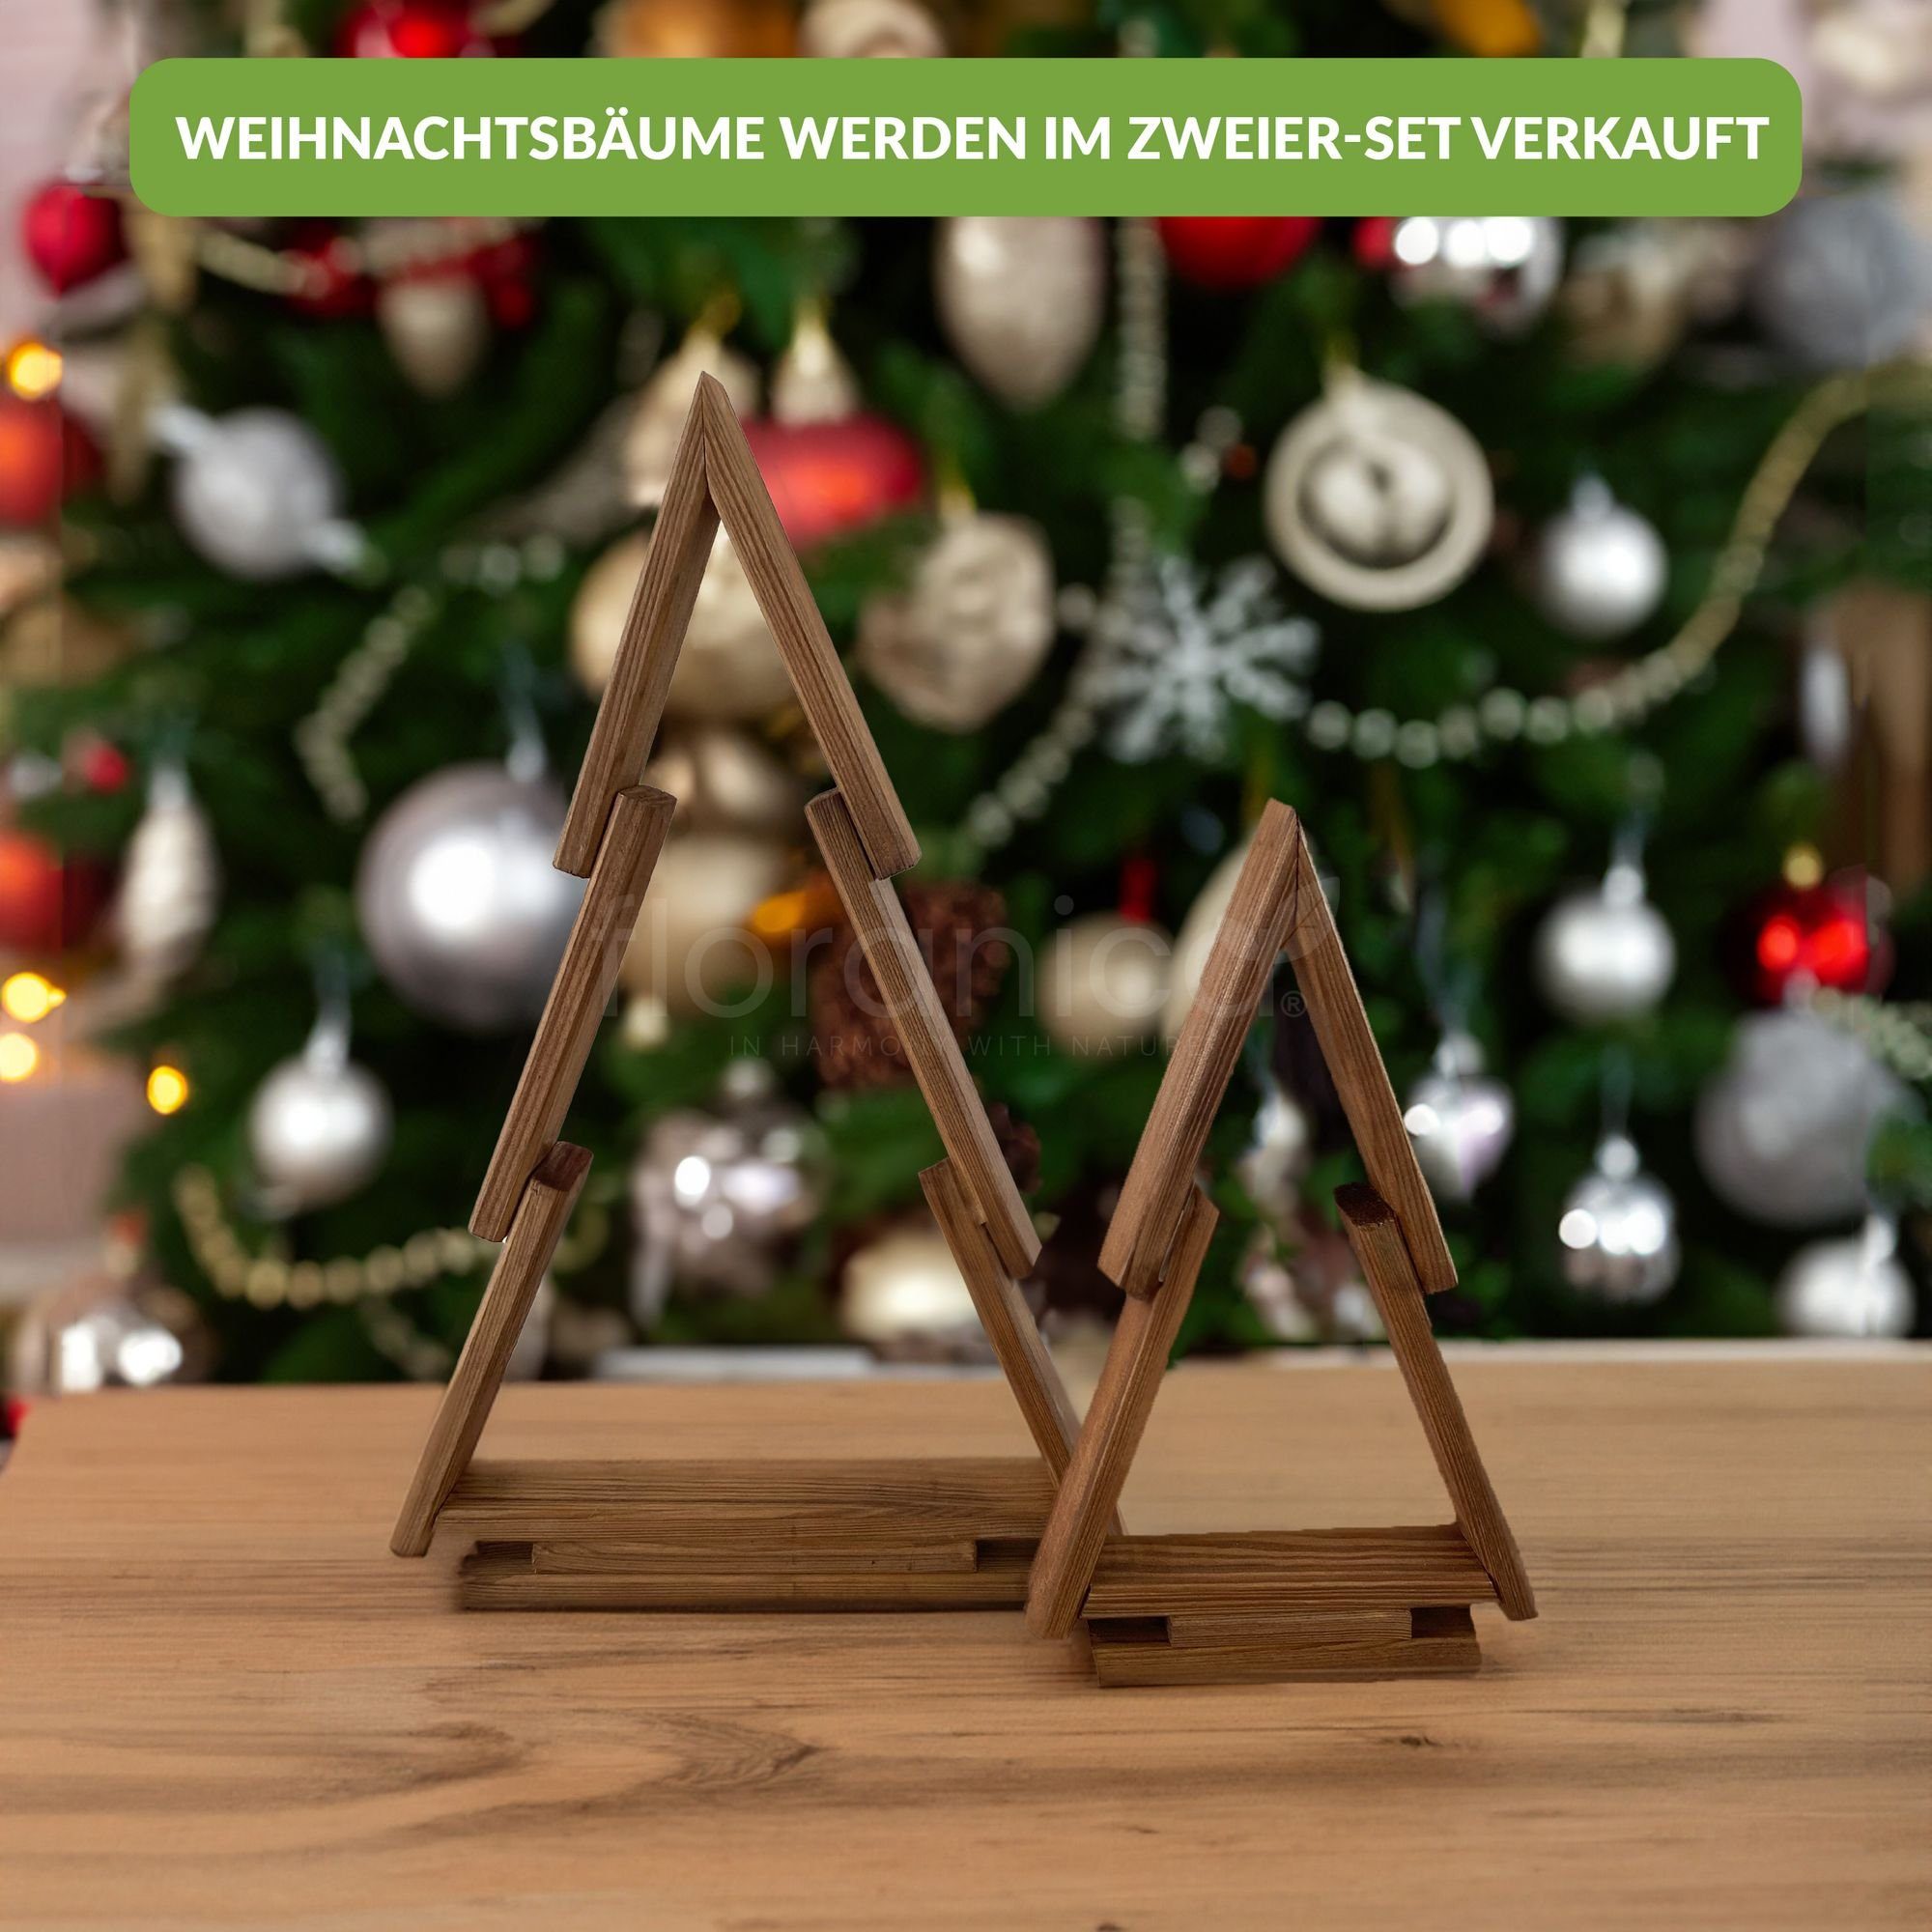 Hängedekoration Braun St), Floranica Kiefernholz Weihnachtsbaum (2 Weihnachtsdeko Farbe: